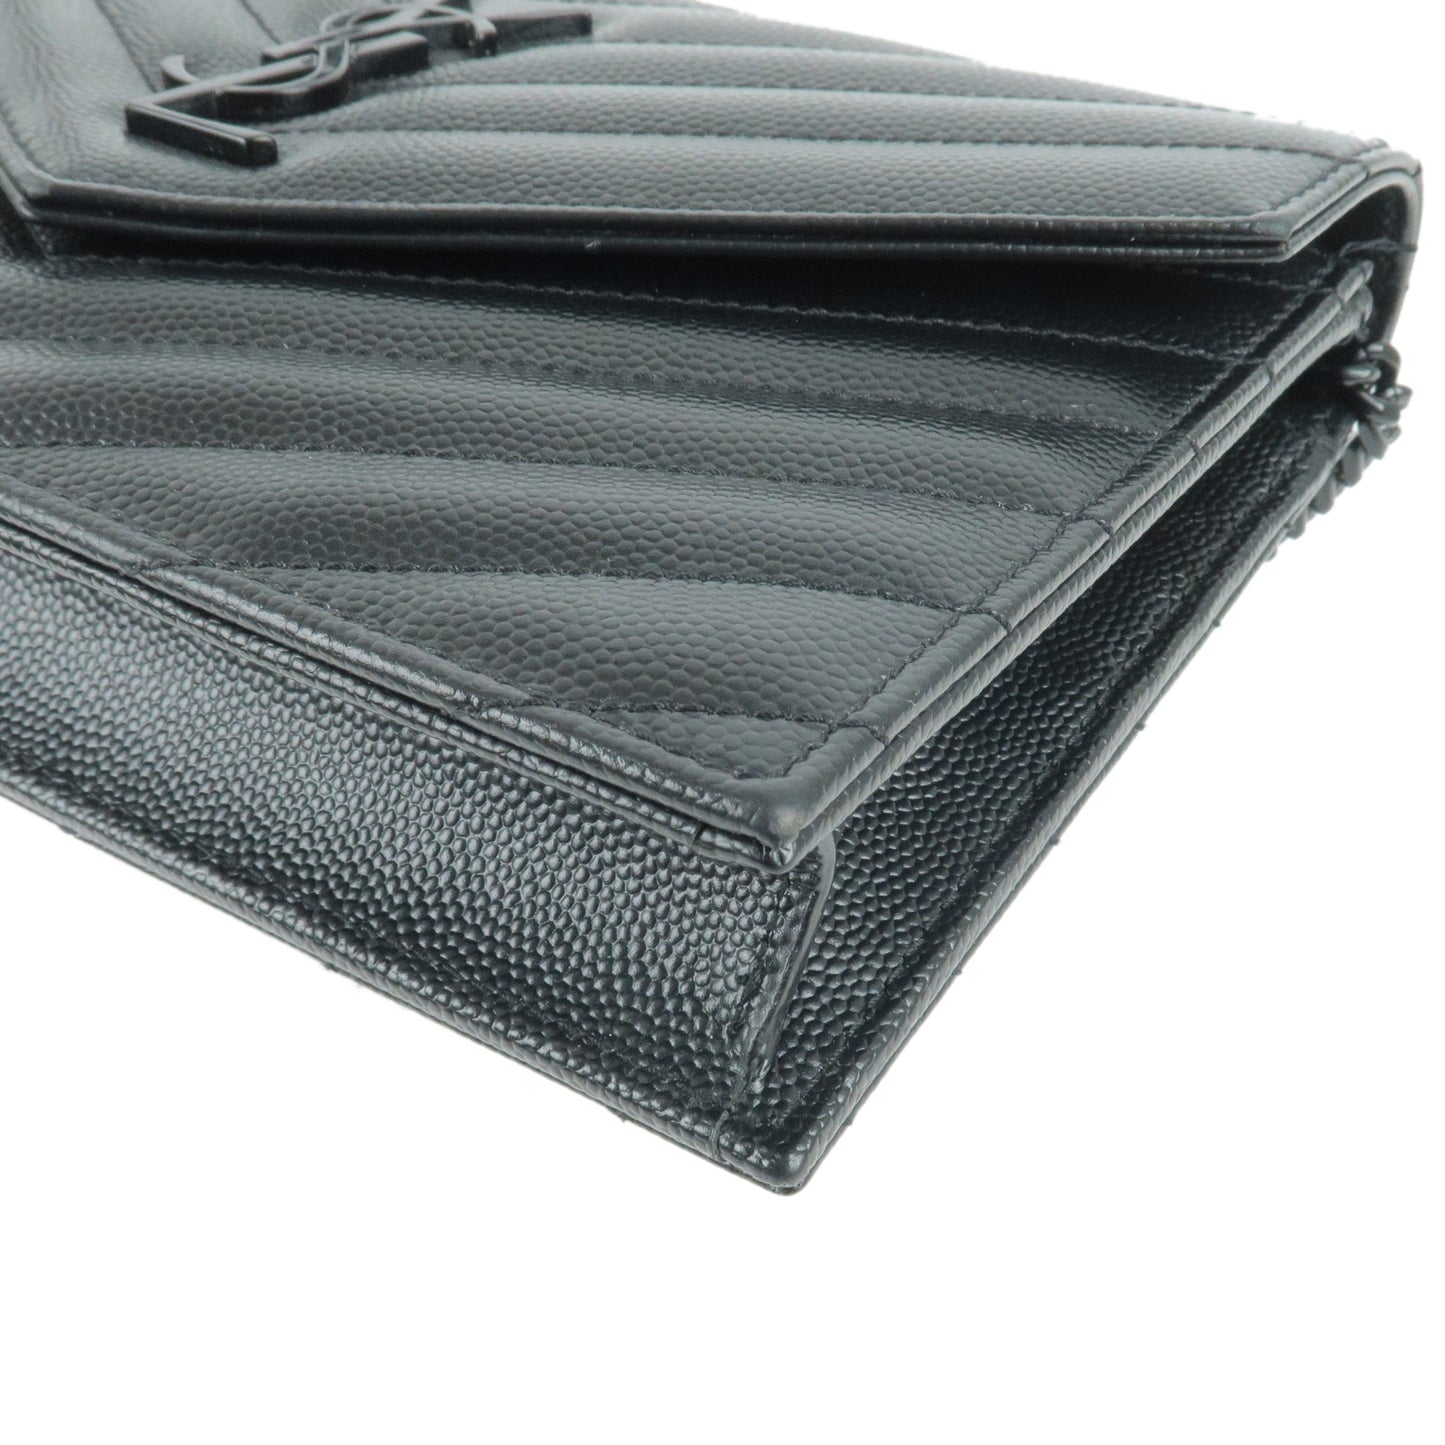 Saint Laurent PARIS Leather Chain Wallet WOC Black 393953